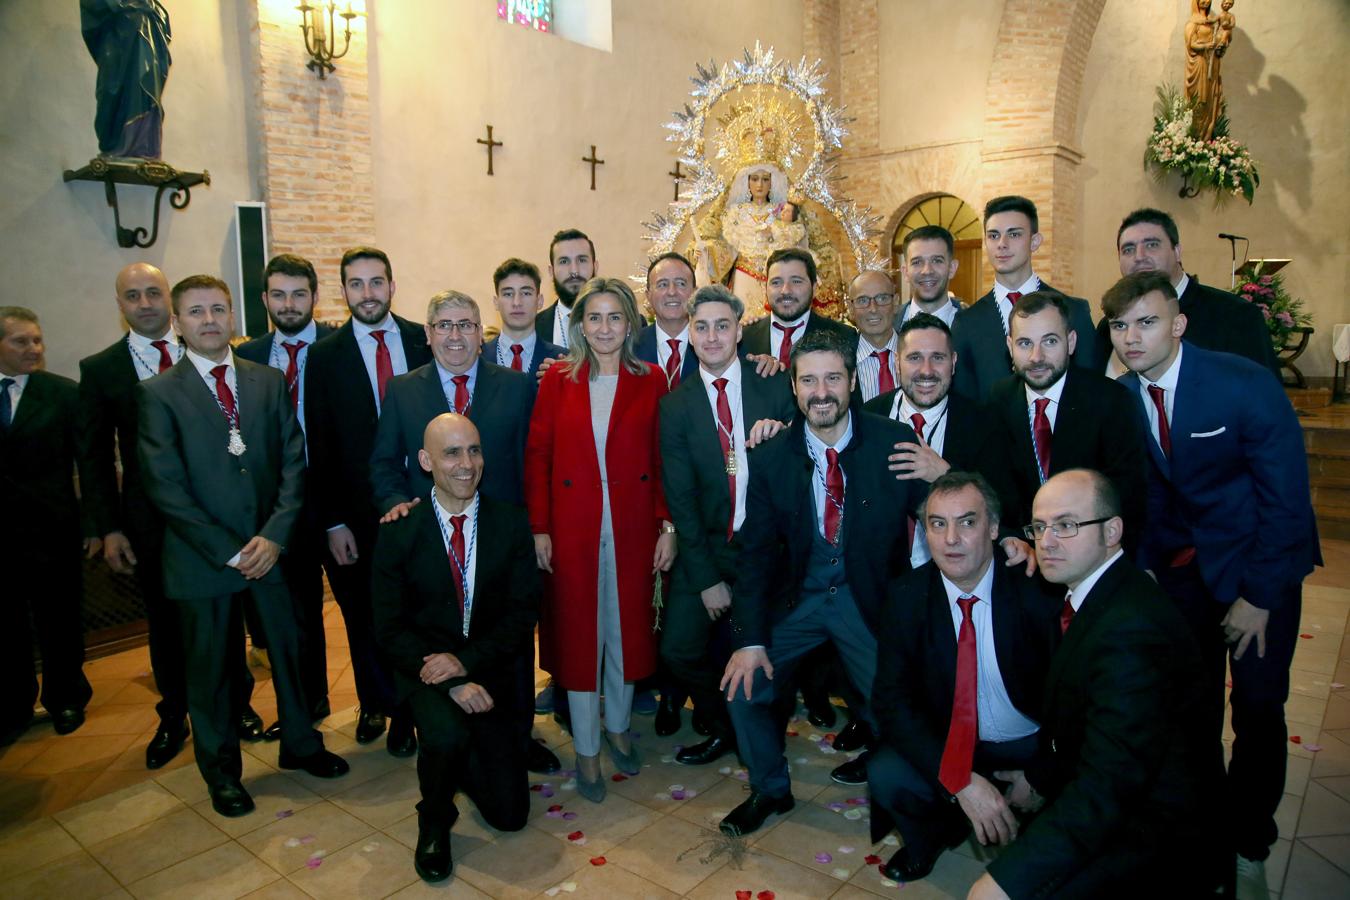 Las imágenes de la fiesta de la Virgen de La Candelaria en Toledo